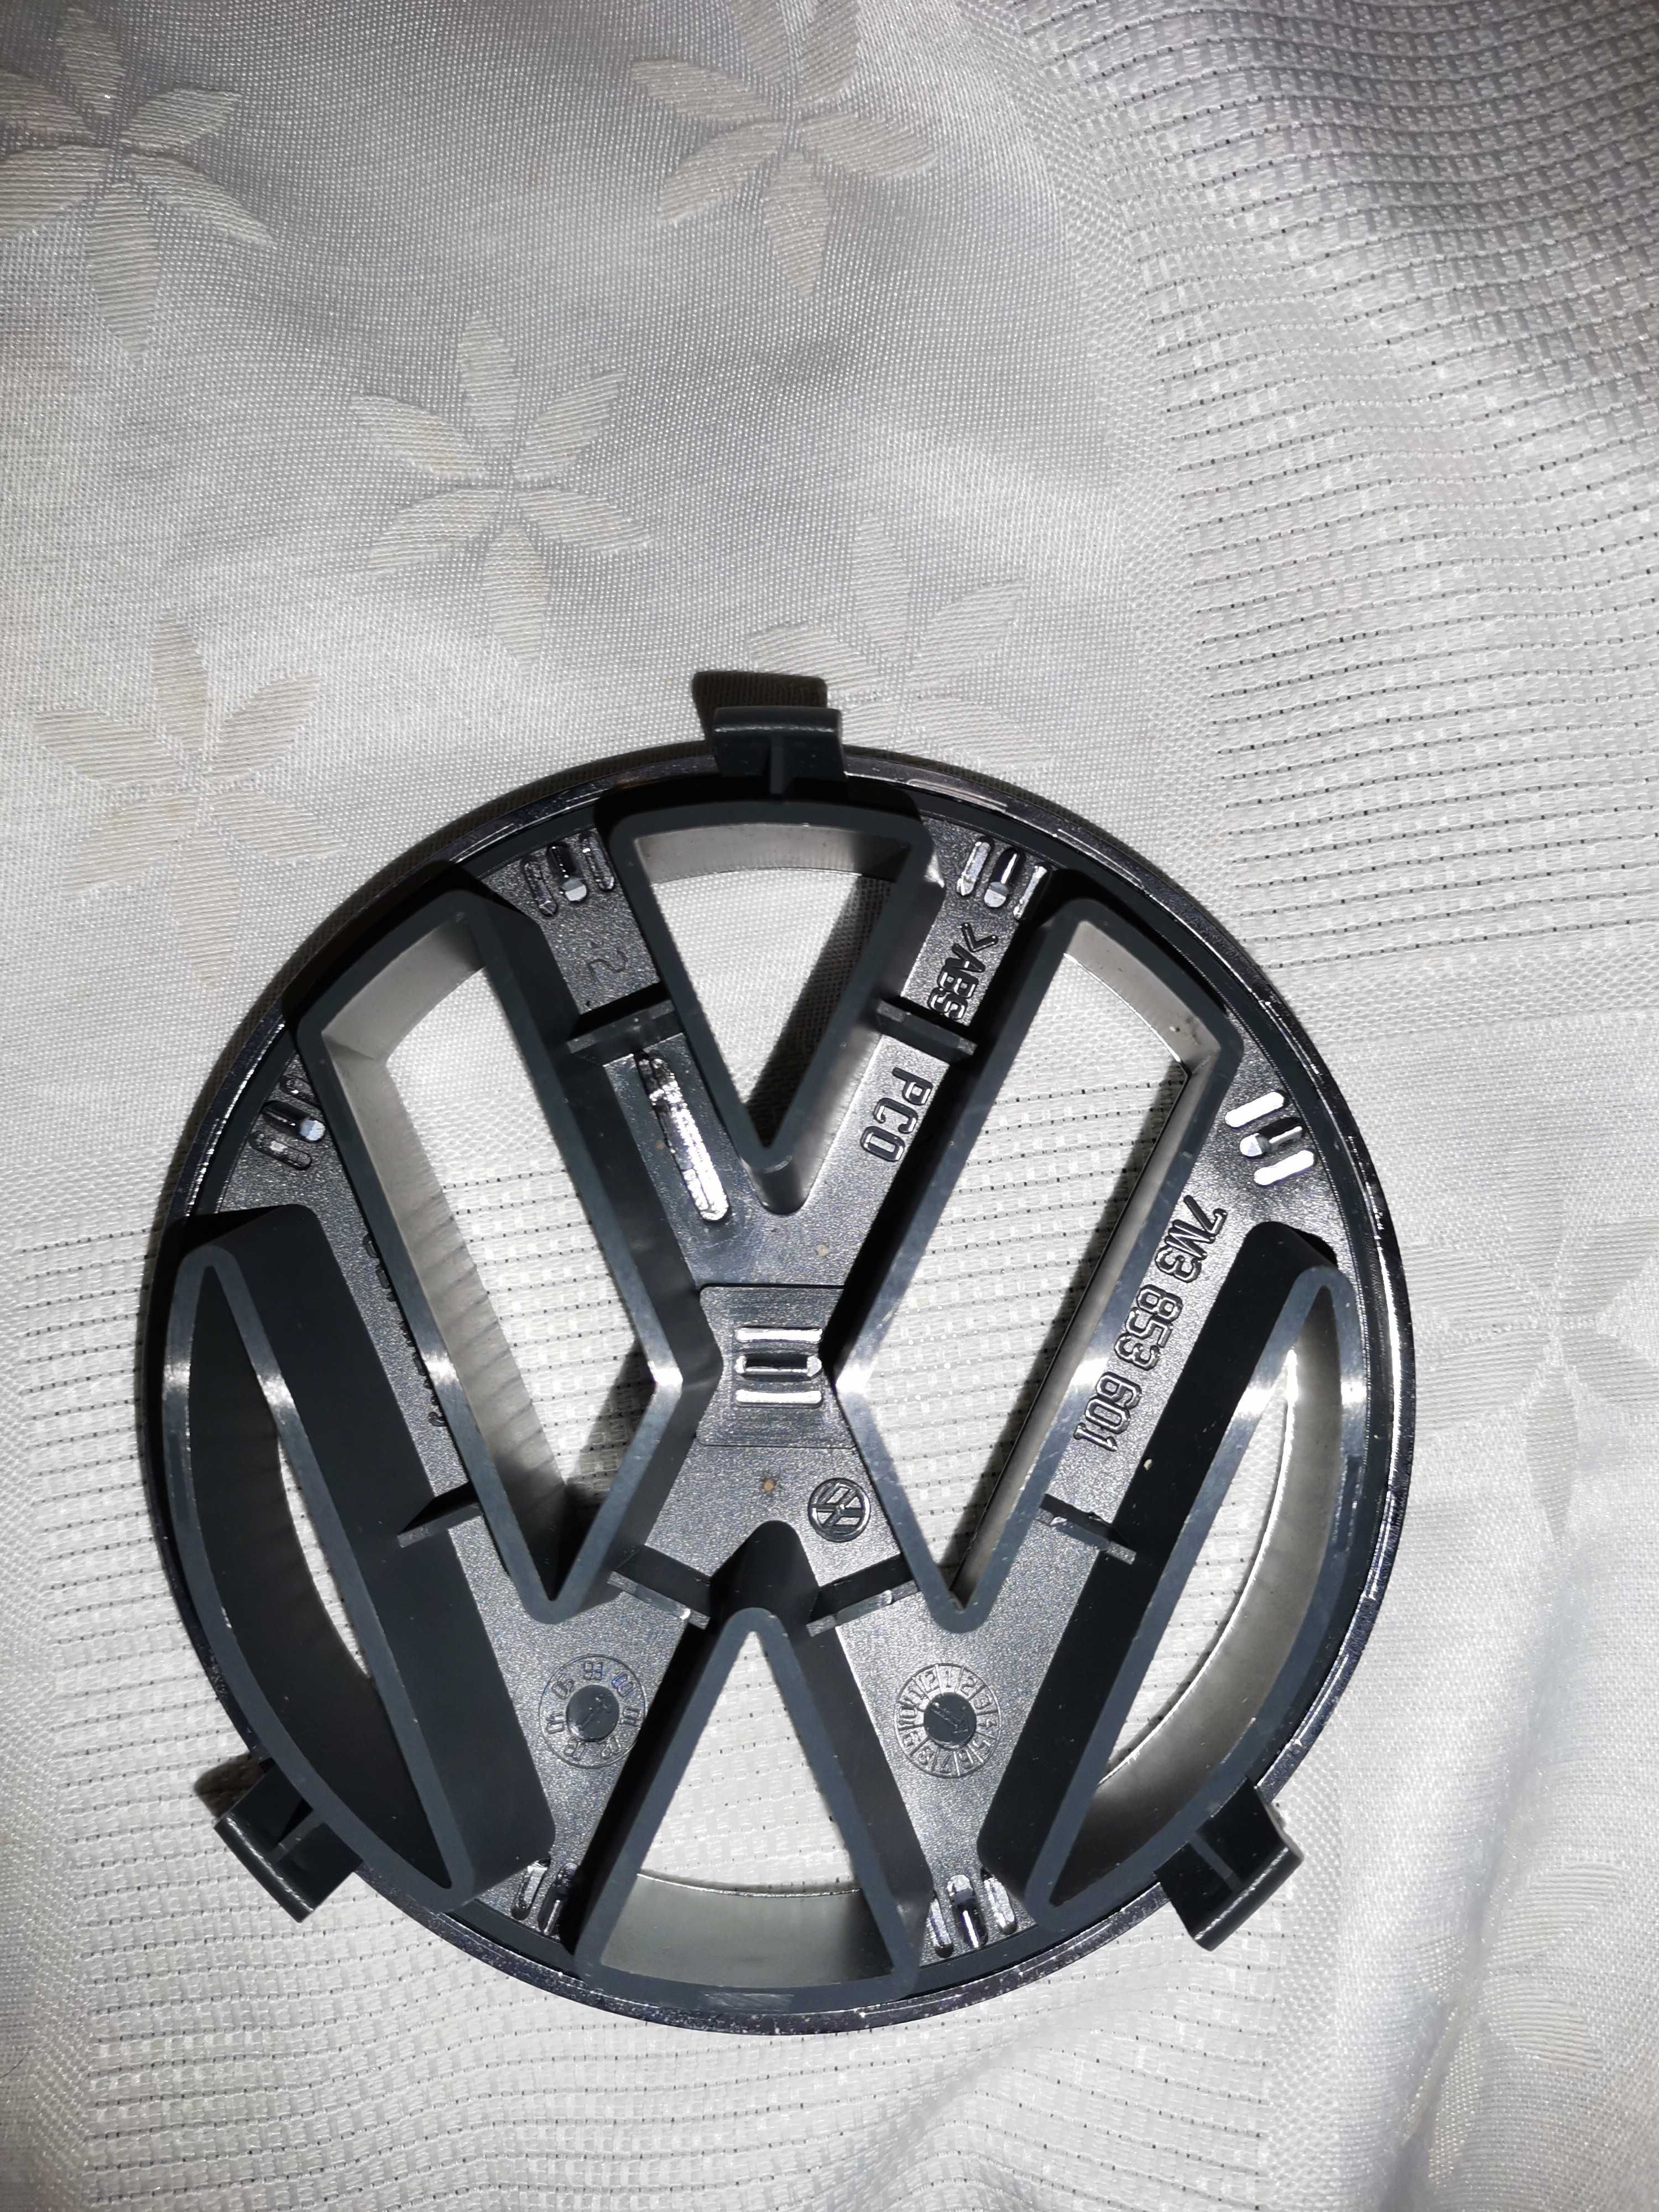 Vendo emblema VW novo original